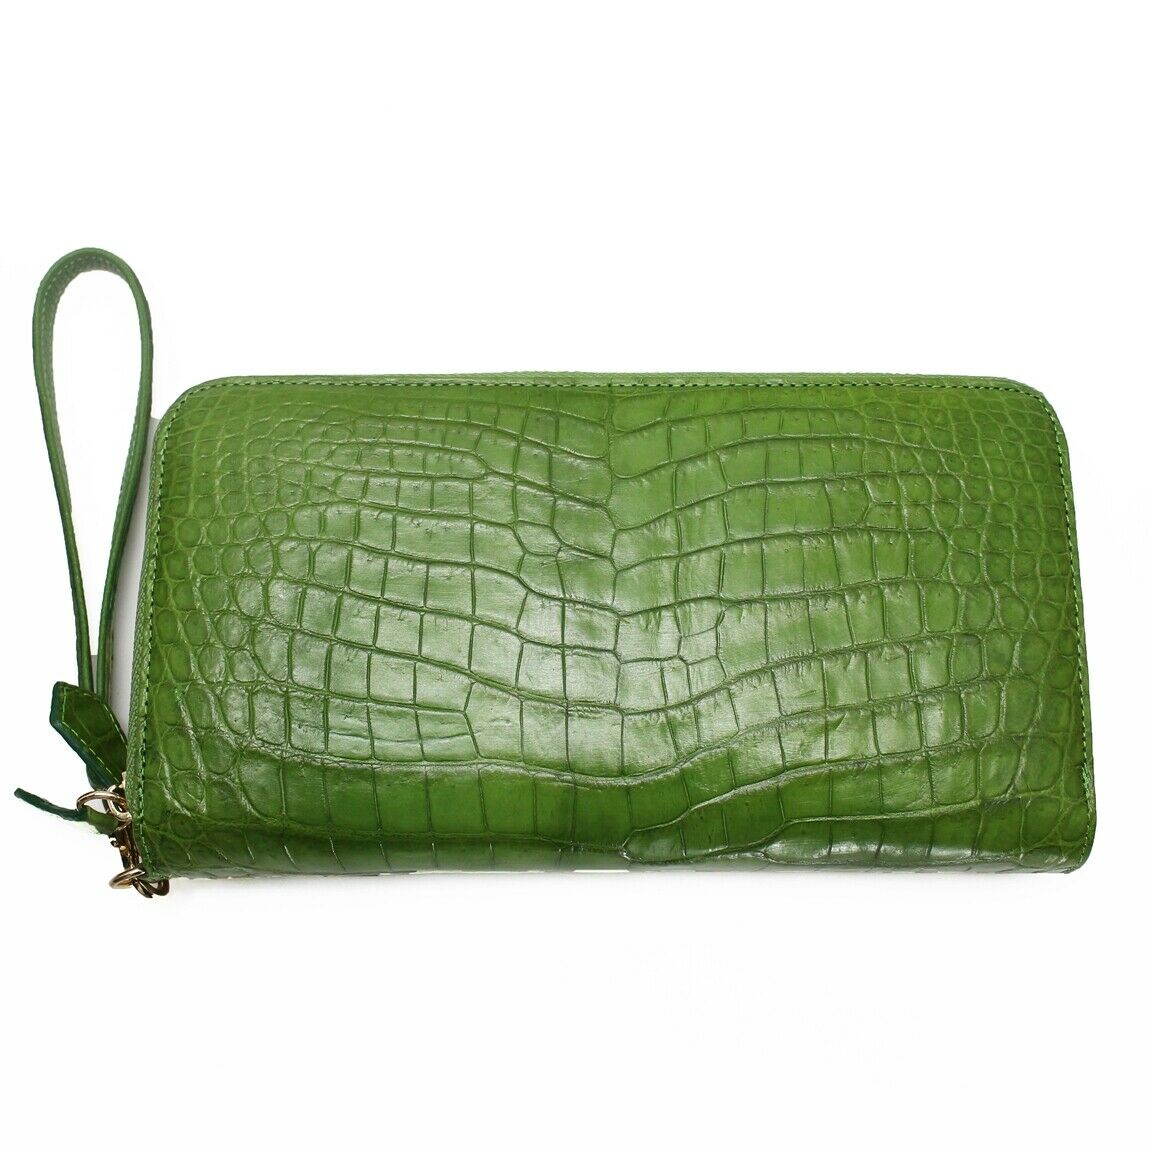 Genuine green Crocodile Leather Handbag, Alligator skin Women Shoulder Bag  24